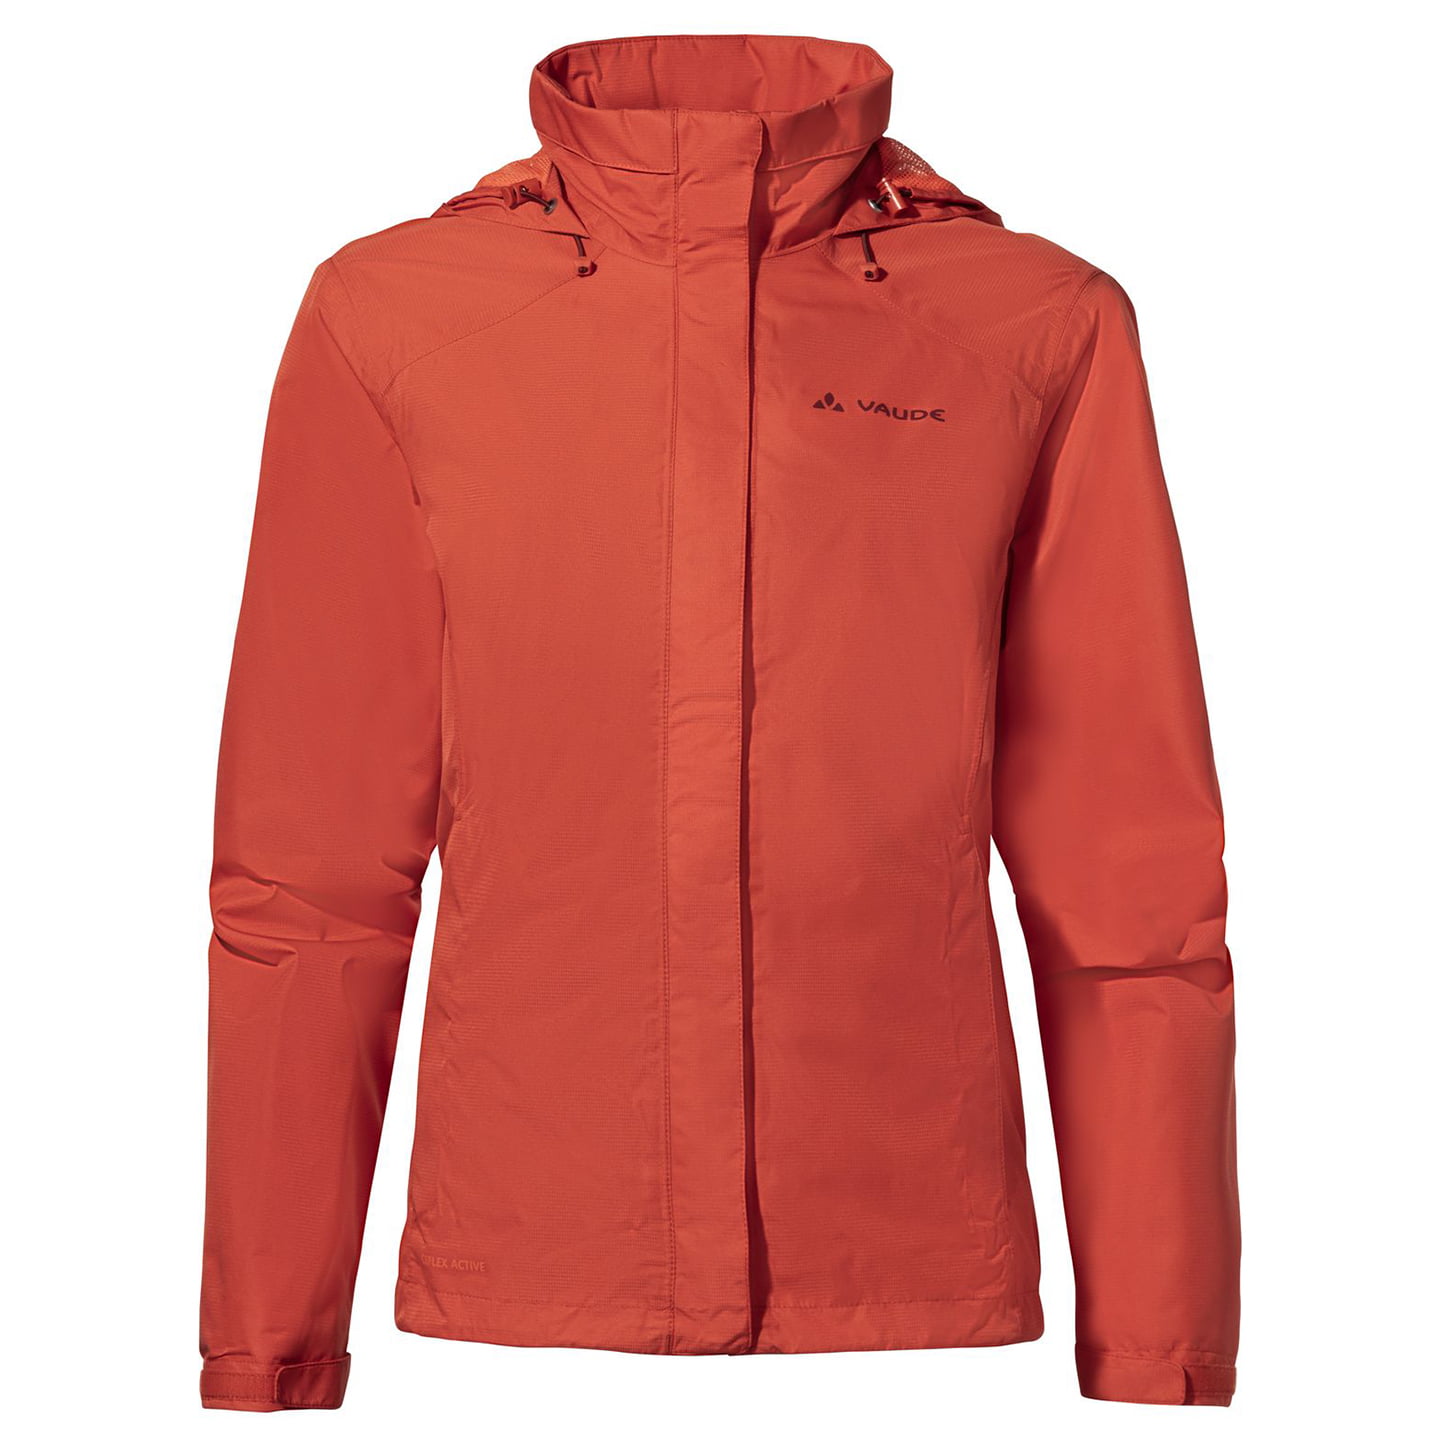 VAUDE Escape Light Women’s Waterproof Jacket Women’s Waterproof Jacket, size 40, Bike jacket, Rainwear